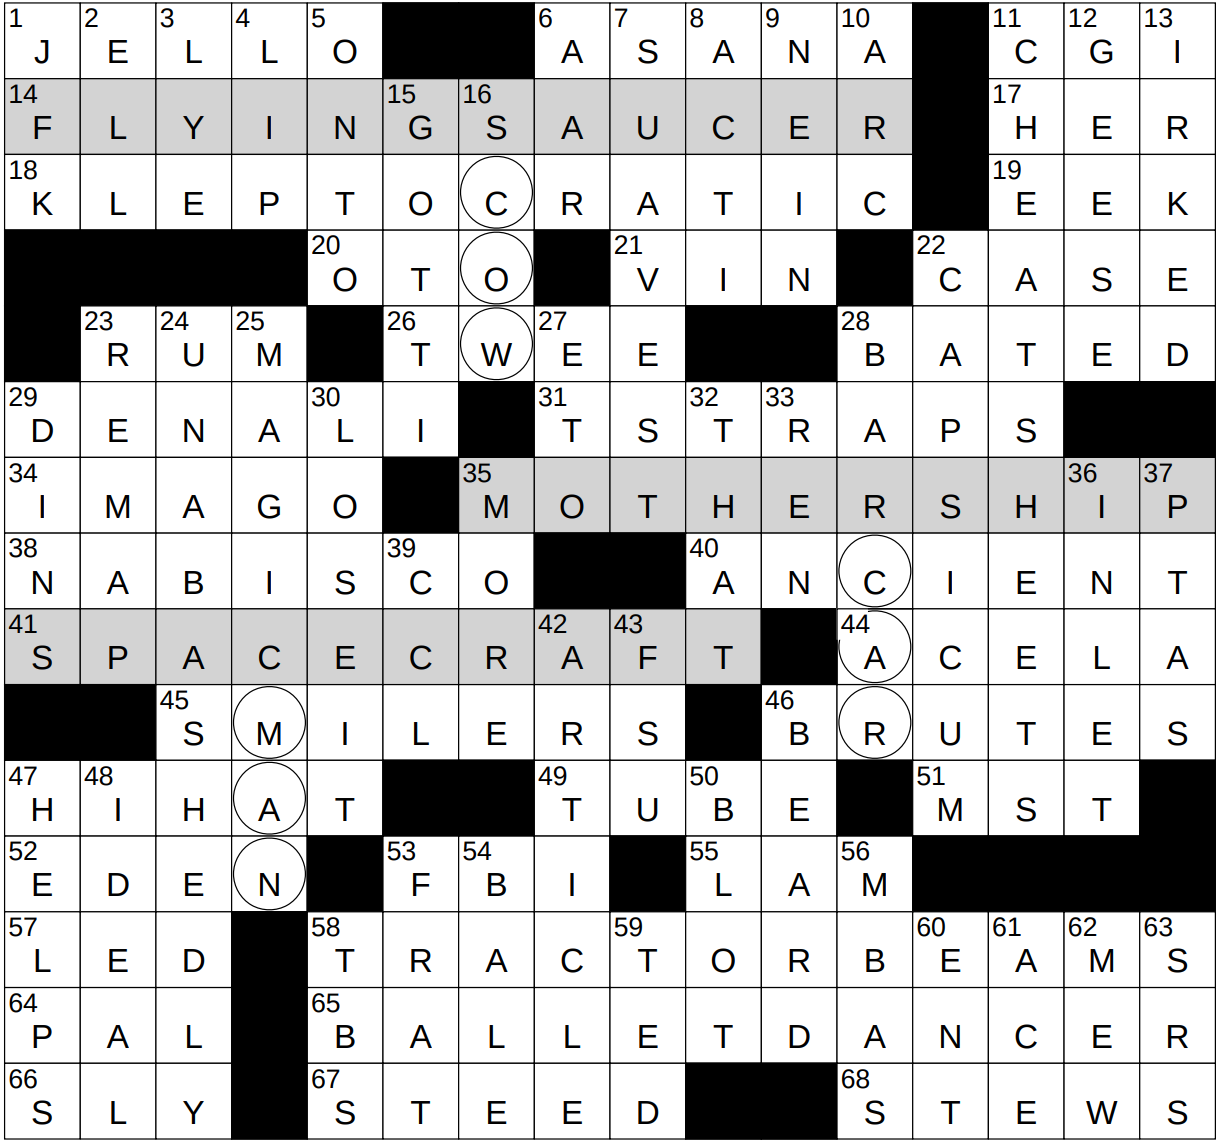 0201 23 NY Times Crossword 1 Feb 23 Wednesday NYXCrossword com